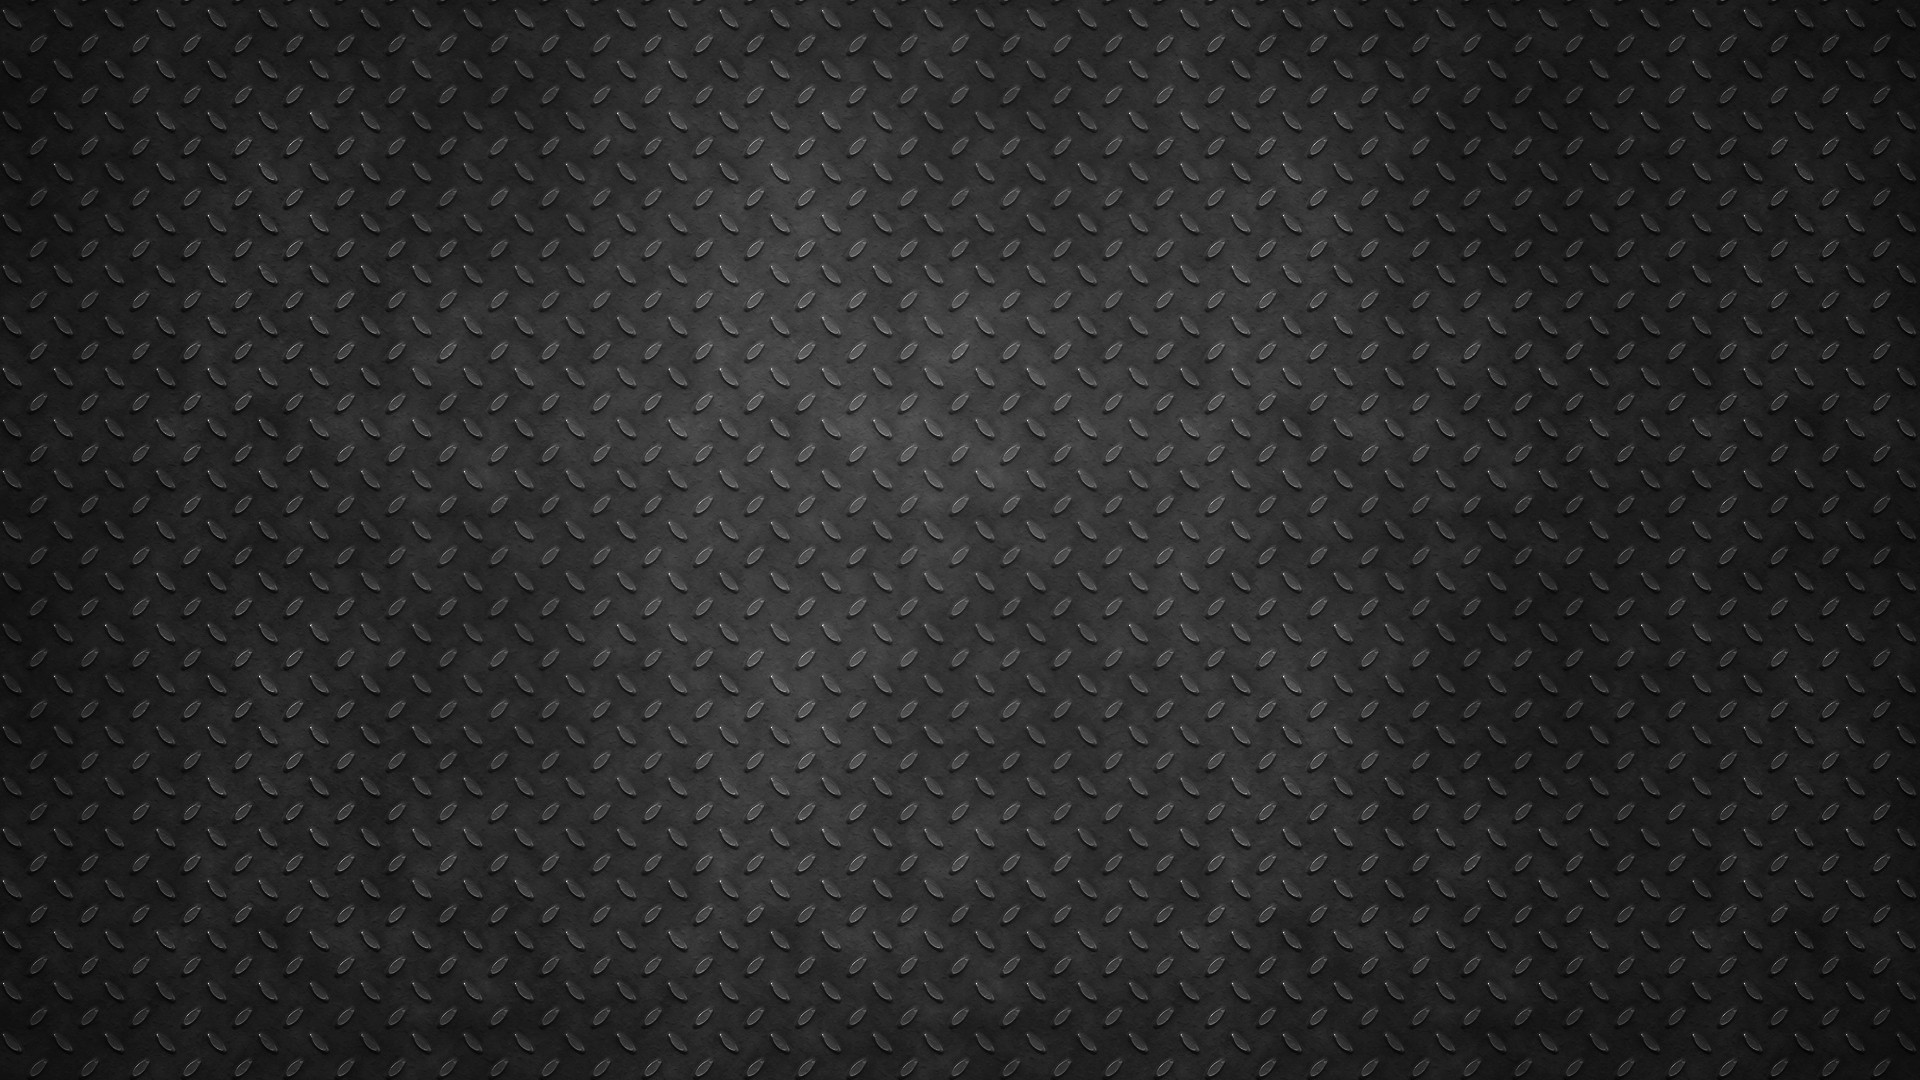 Steel Wallpaper 63 Images HD Wallpapers Download Free Images Wallpaper [wallpaper981.blogspot.com]